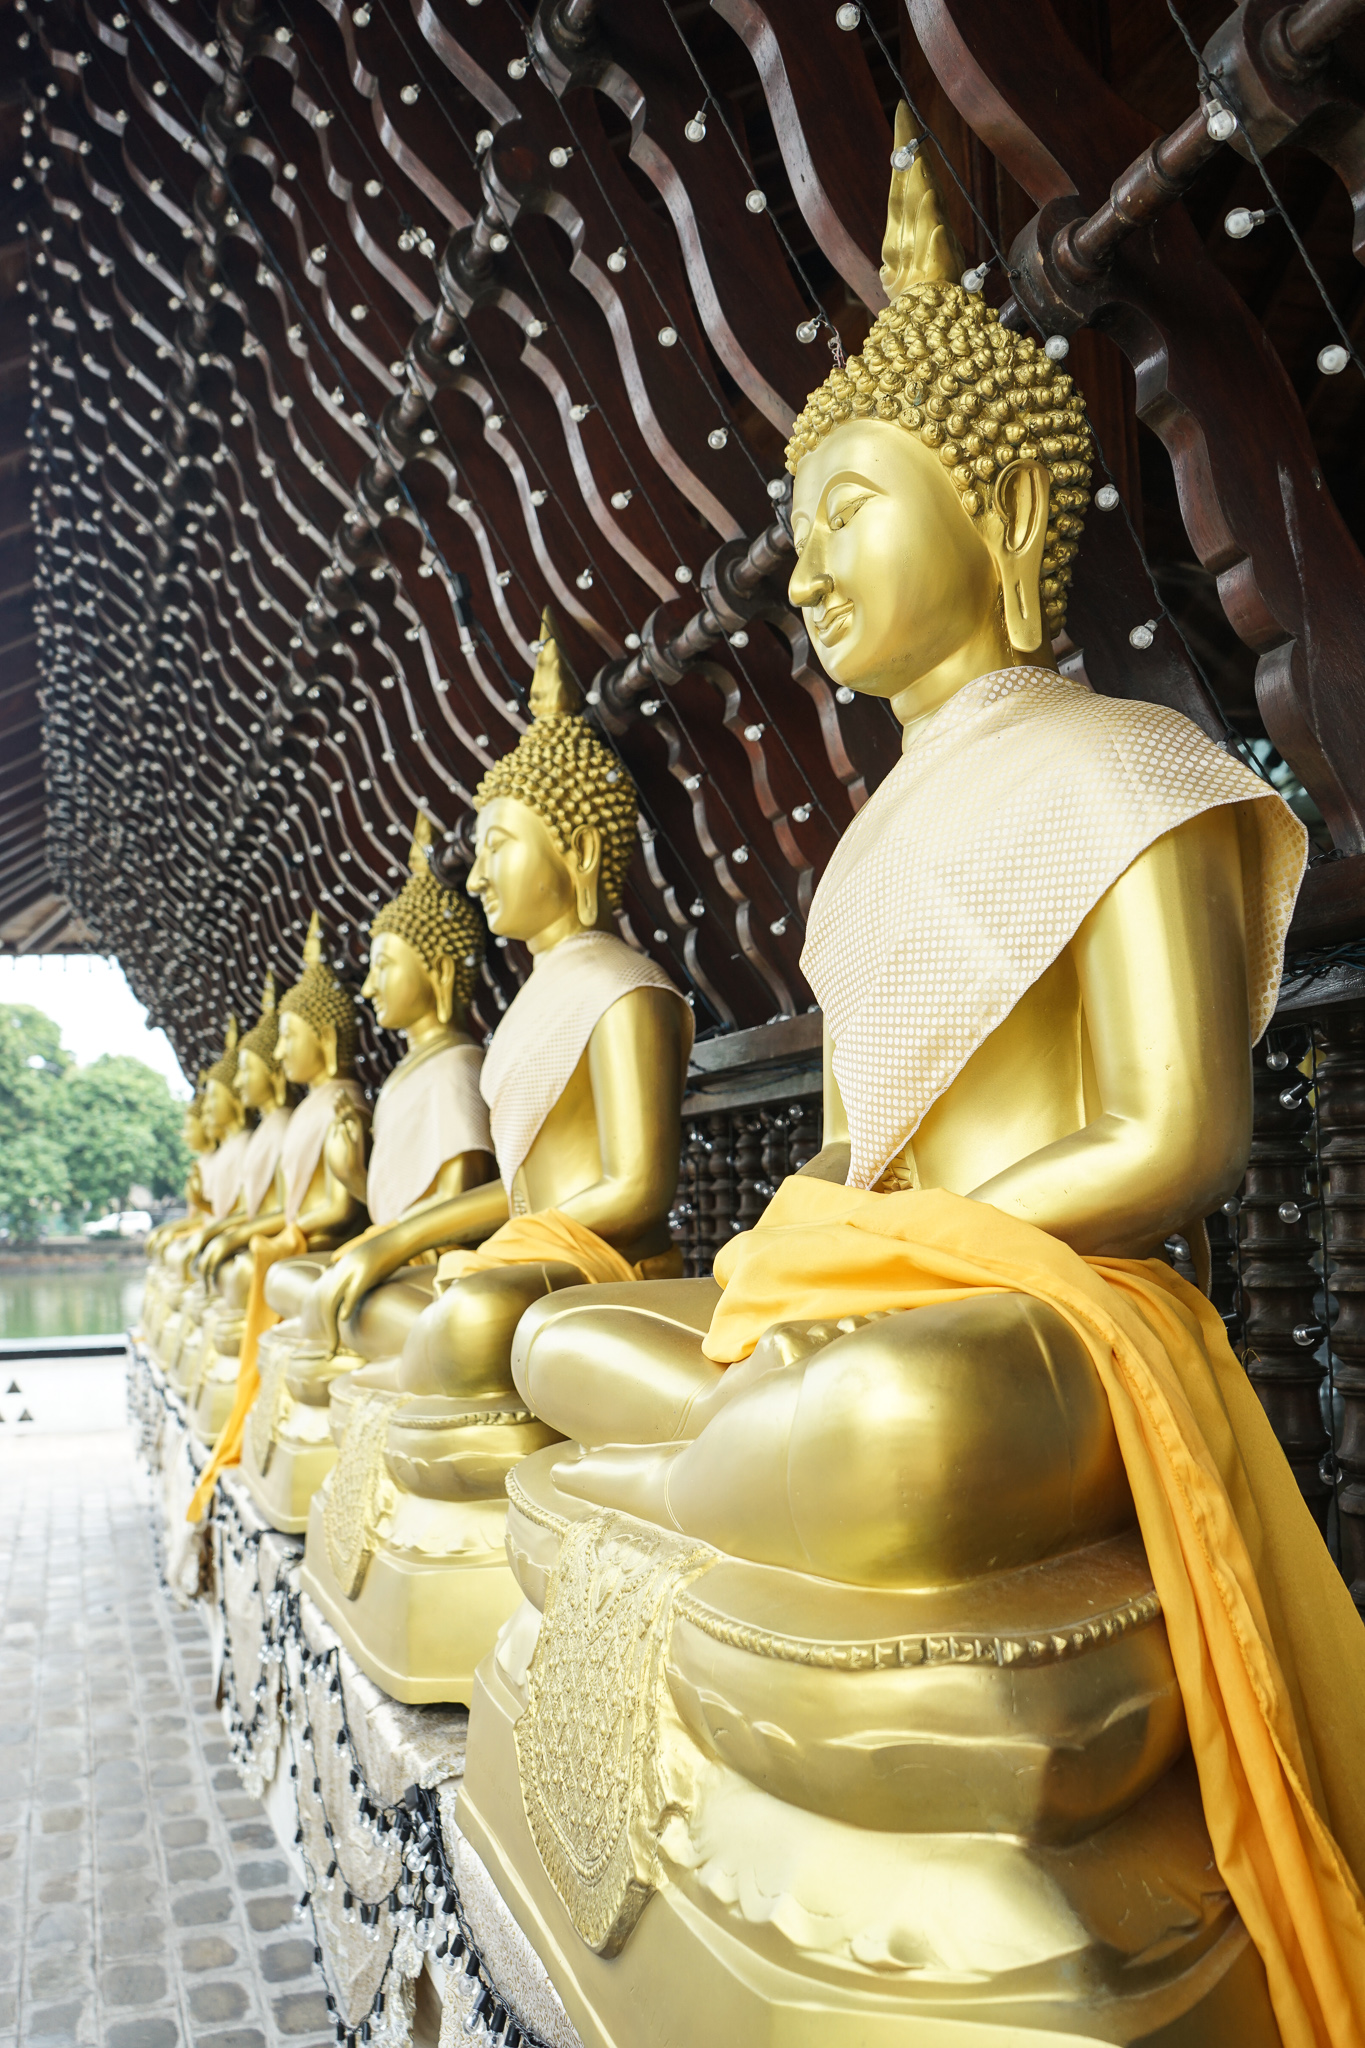 The golden meditating Buddhas 